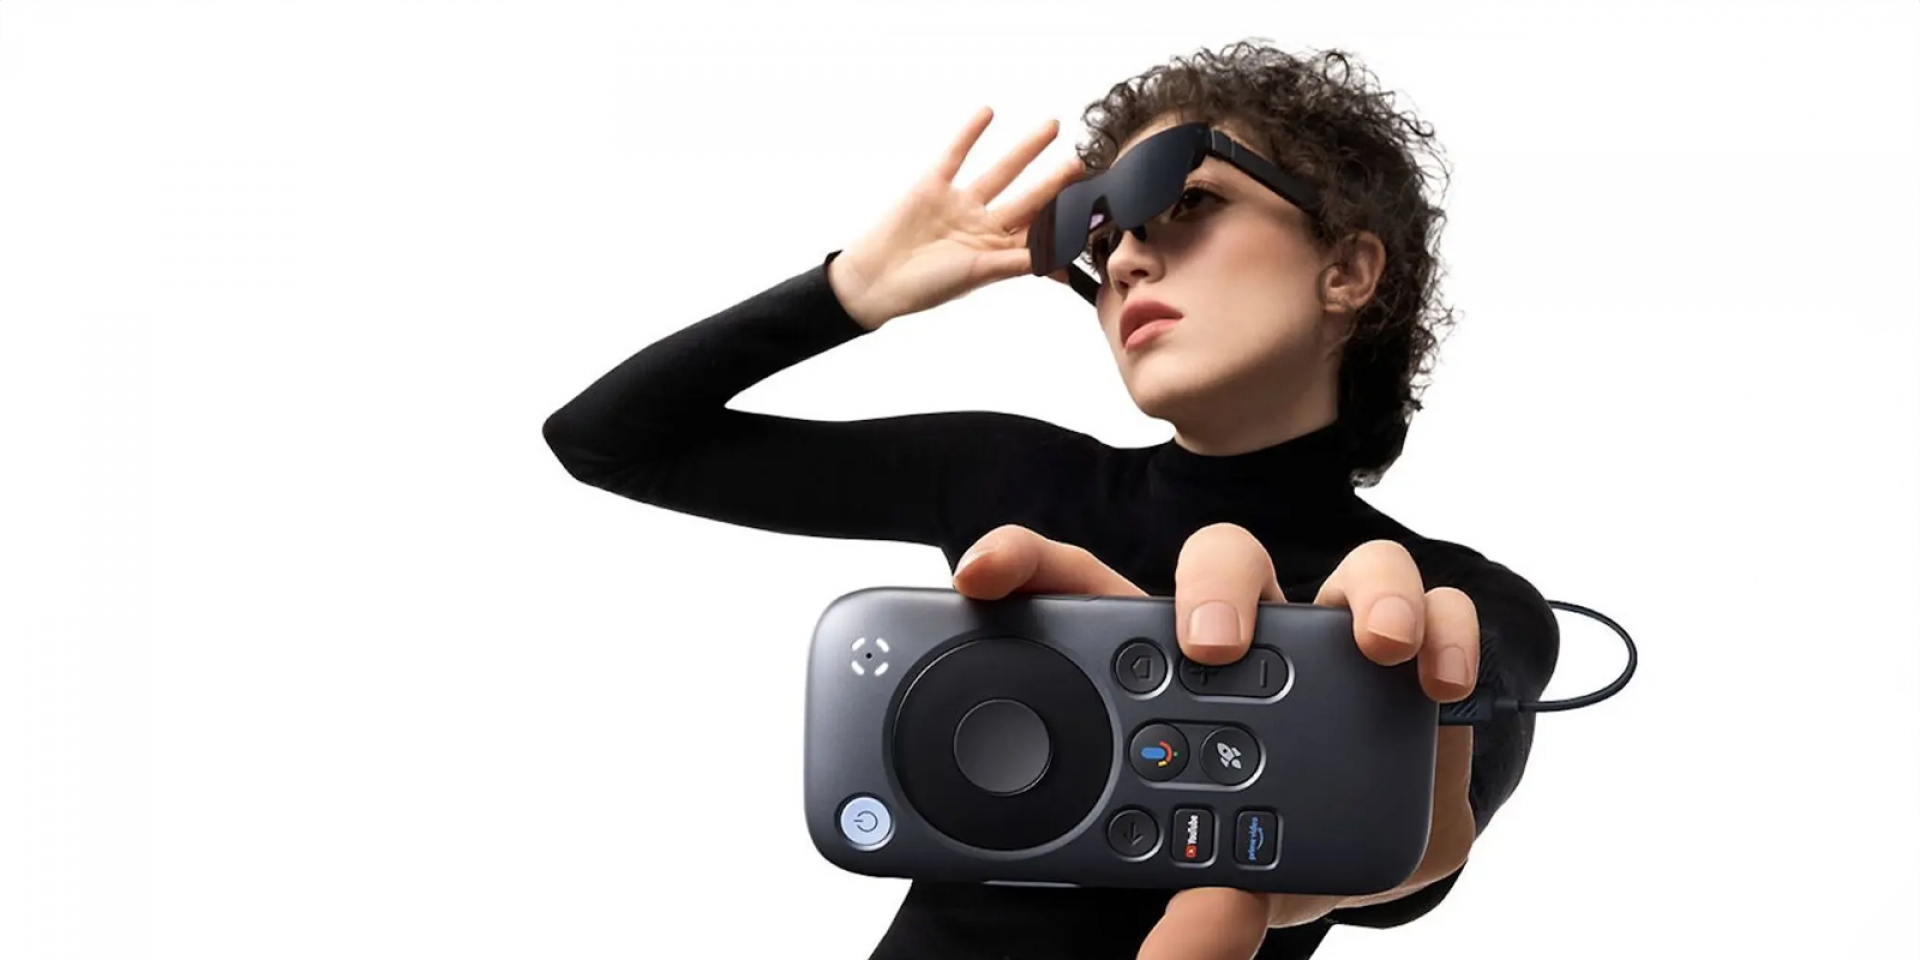 把 Google TV 裝進口袋。RayNeo 推出 XR 系列眼鏡專用「口袋劇院」！